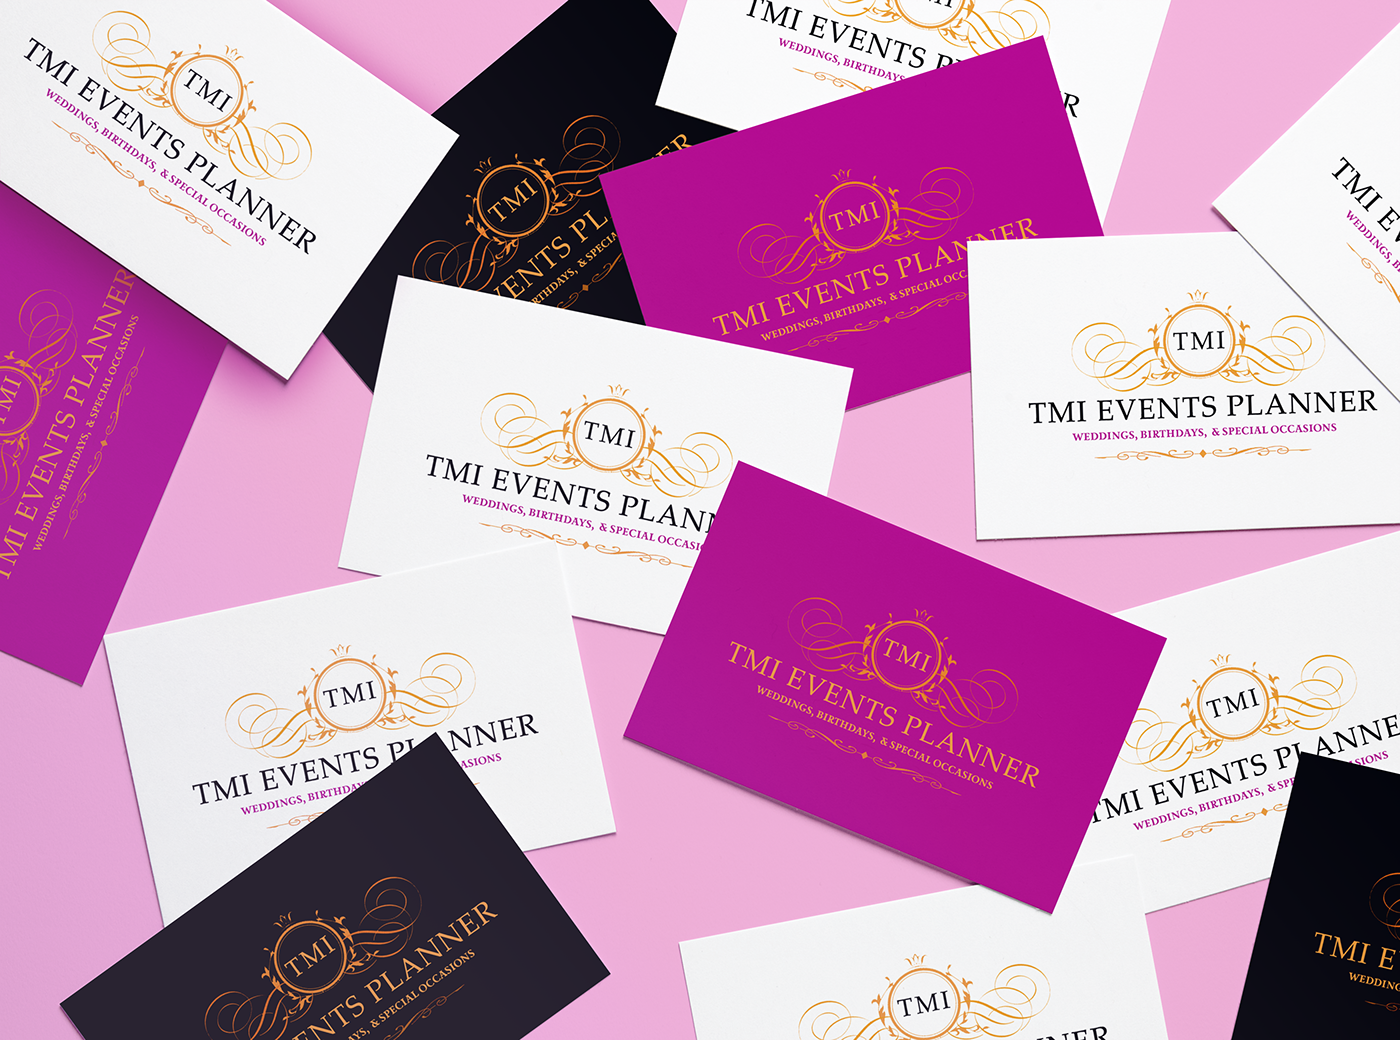 logo Events planner wedding mock up design Business Cards